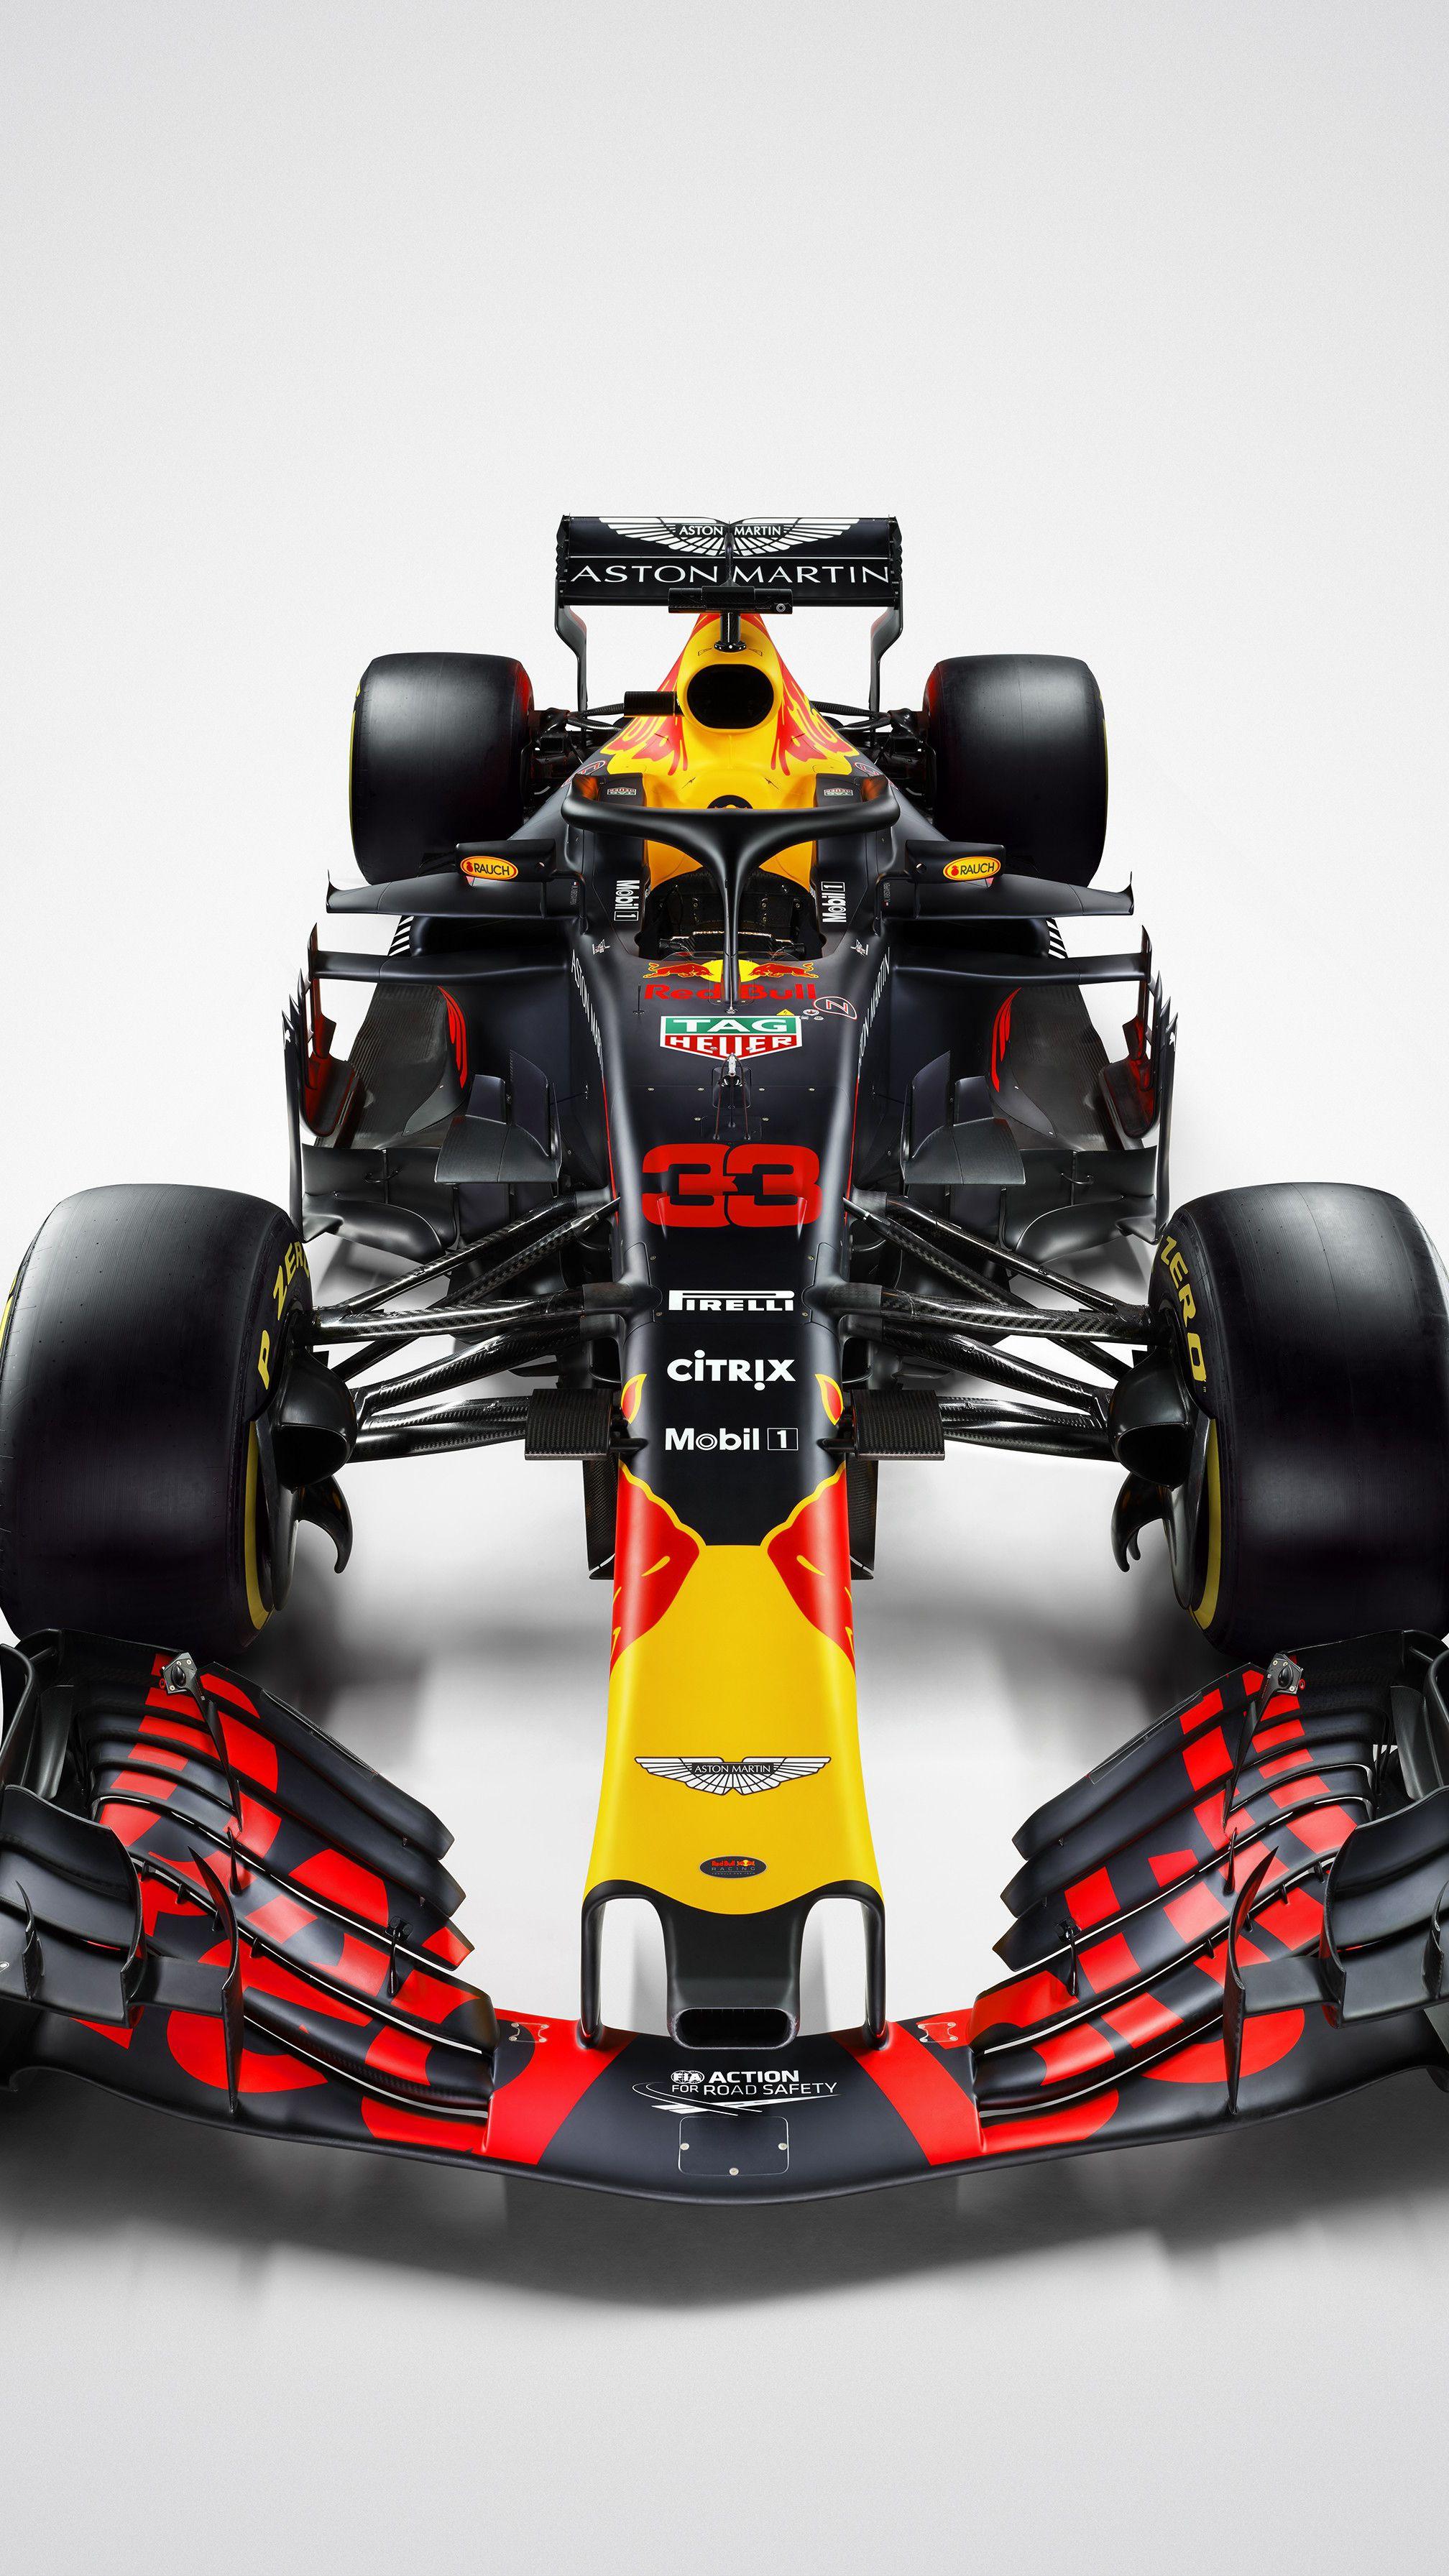 2016 x 3585 · jpeg - Red Bull Formula 1 Iphone Wallpaper : Free Download Funmozar Red Bull ...